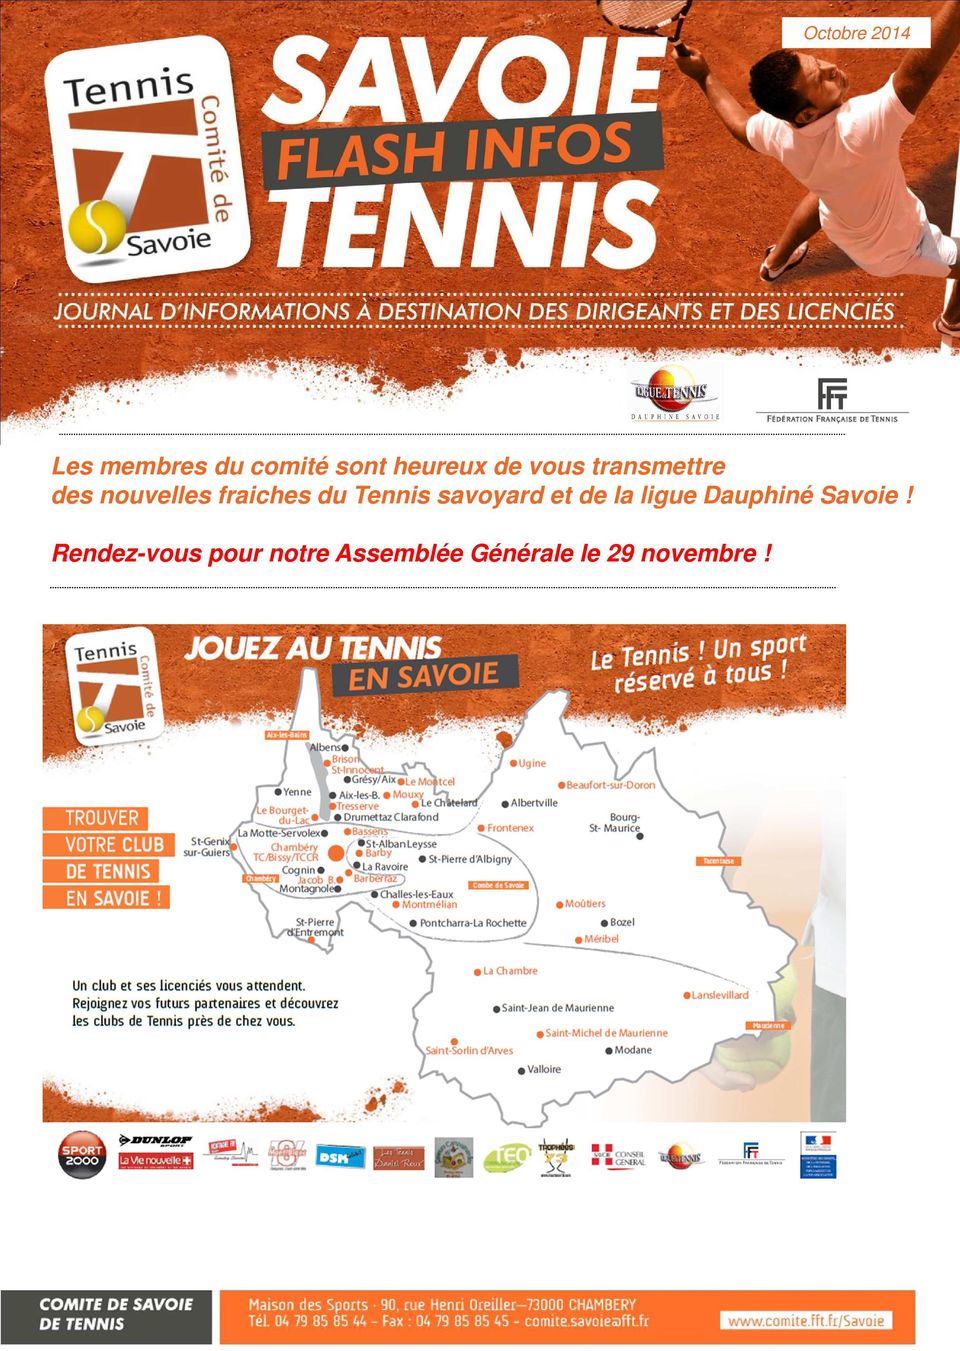 Tennis savoyard et de la ligue Dauphiné Savoie!